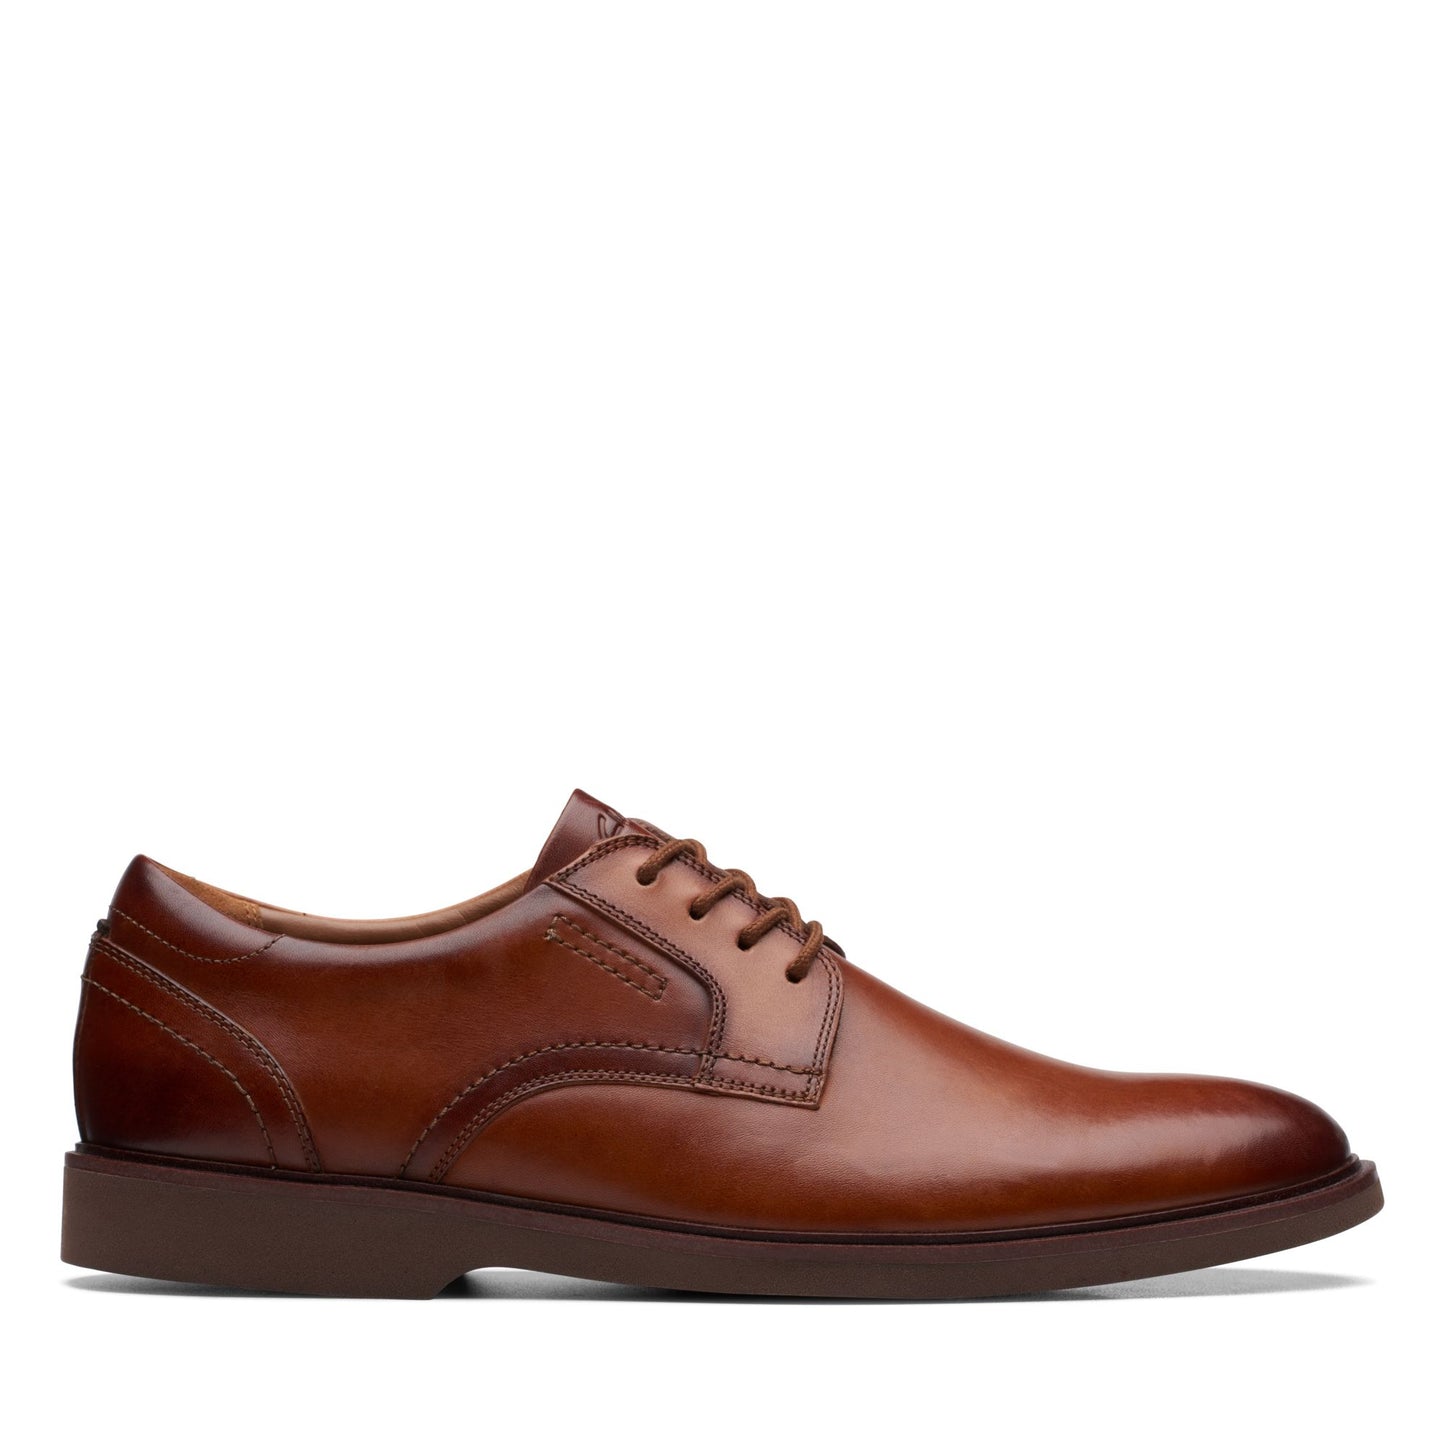 Zapatos Oxford De La Marca Clarks Para Hombre Modelo Malwood Lace Brown Leather En Color Marrón